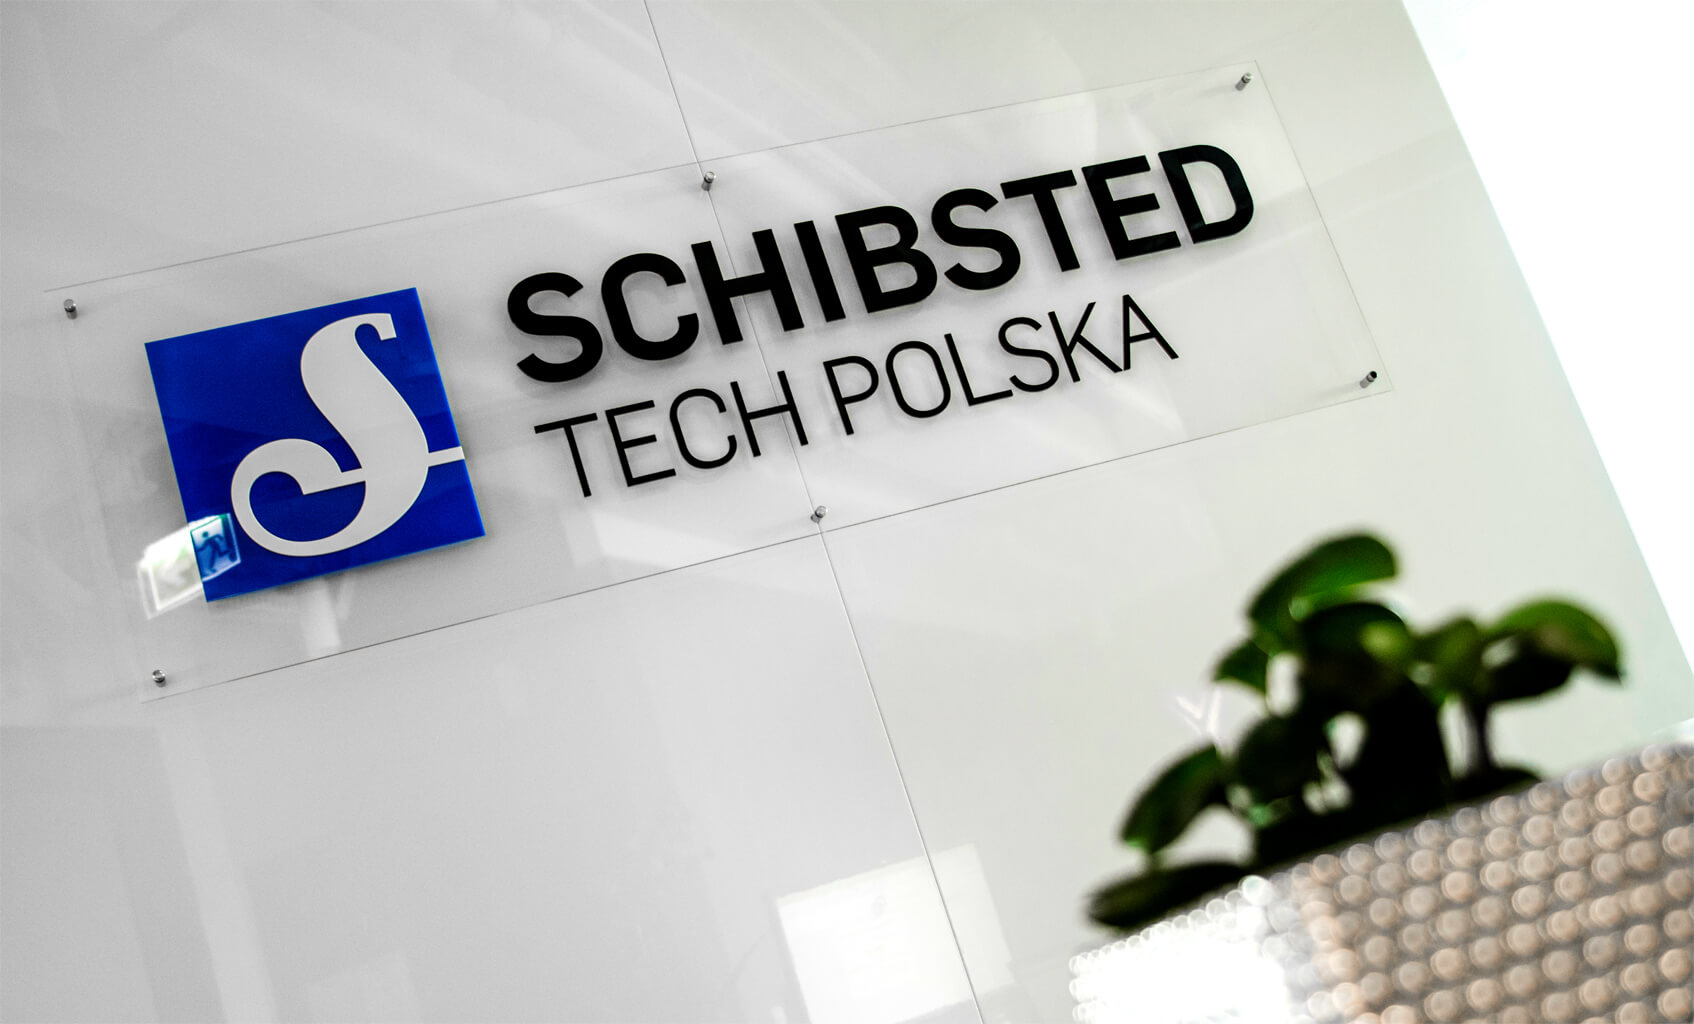 Schibsted Tech Polska - Schibsted Tech Polska - logo i litery przestrzenne 3D na podstawie plexi na dystansach w recepcji